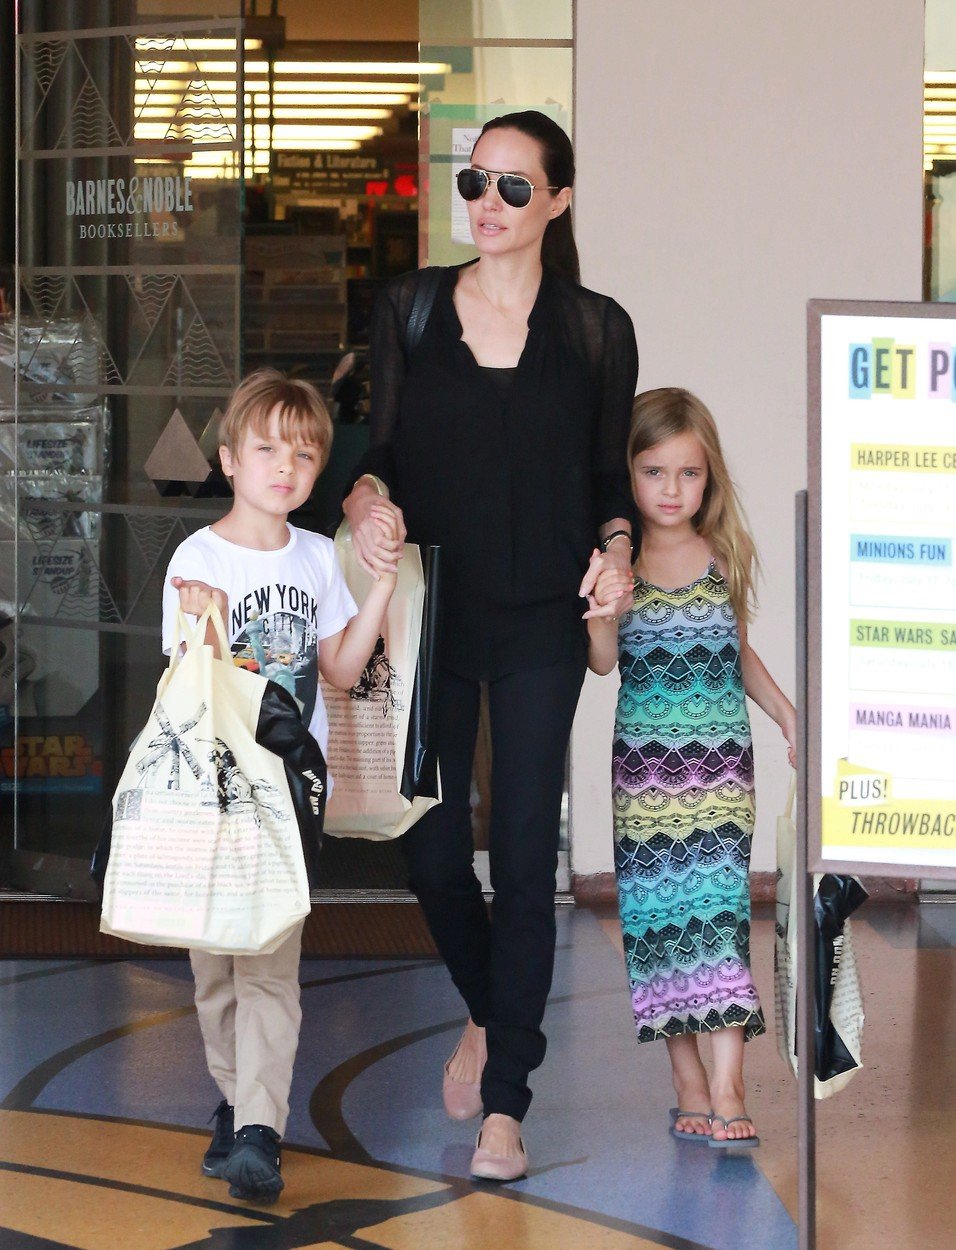 Angelina Jolie s dvojčaty Vivienne Marcheline a Knoxem Leonem.